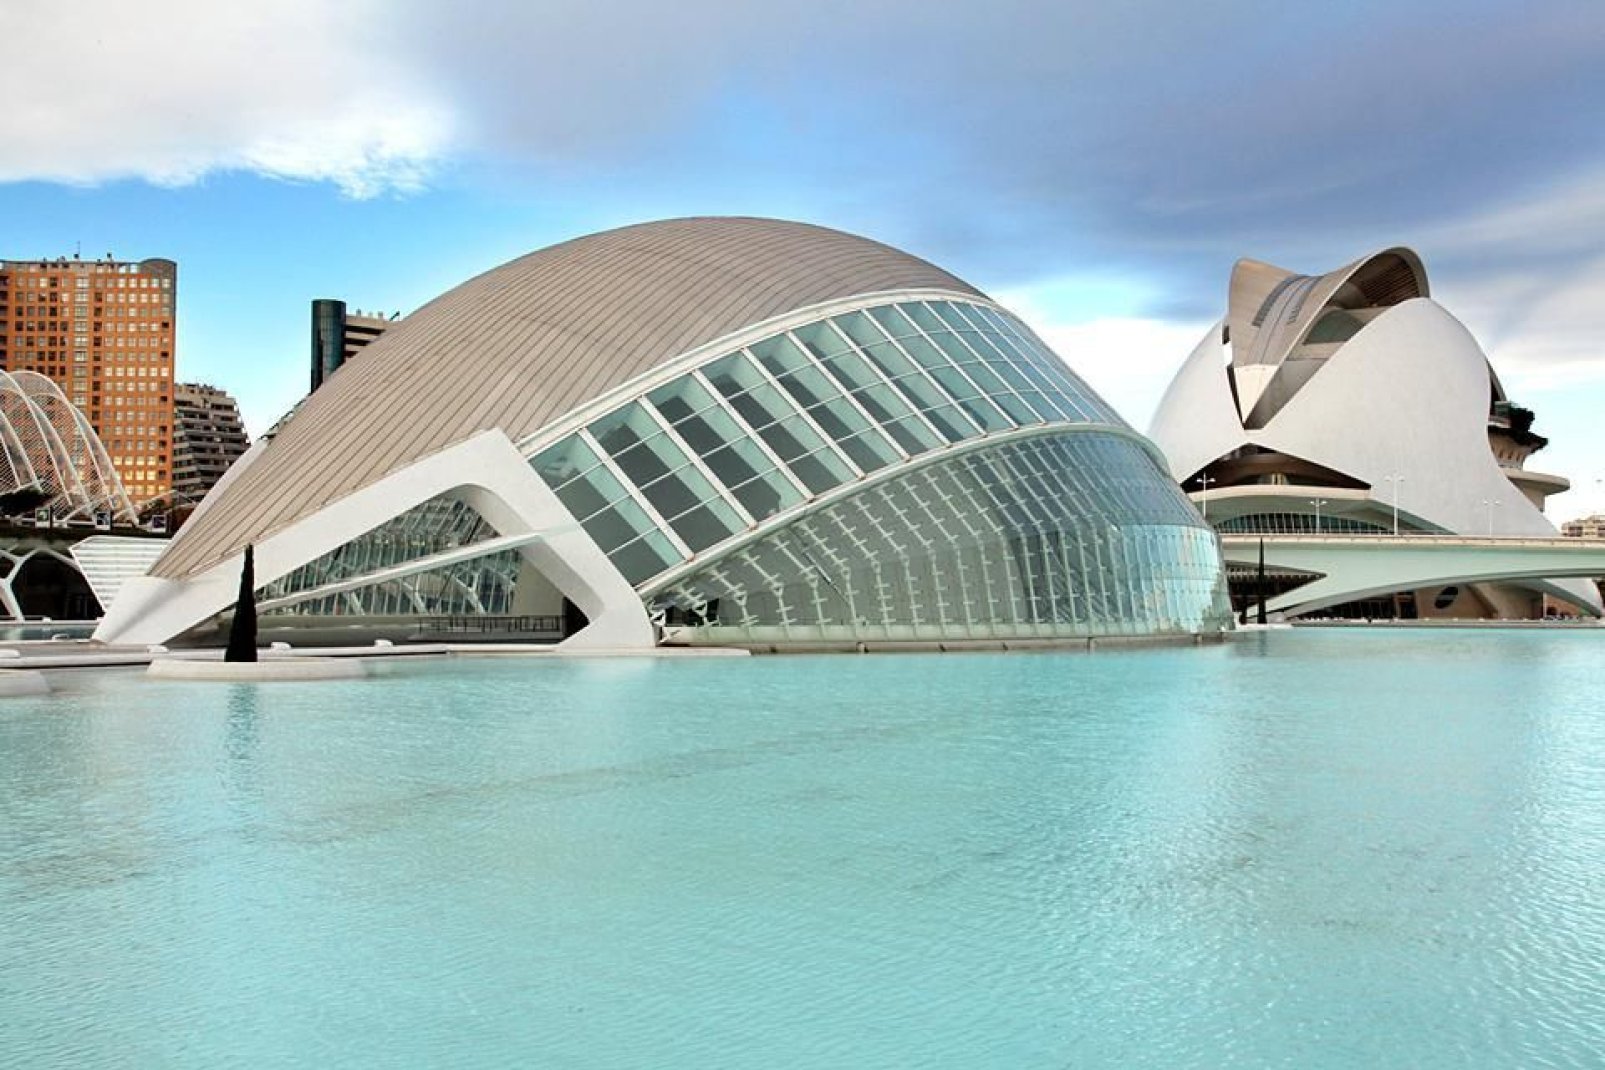 Valencia è una città che riunisce diversi giardini botanici e il museo delle Arti e delle Scienze la cui architettura originale merita di essere vista.